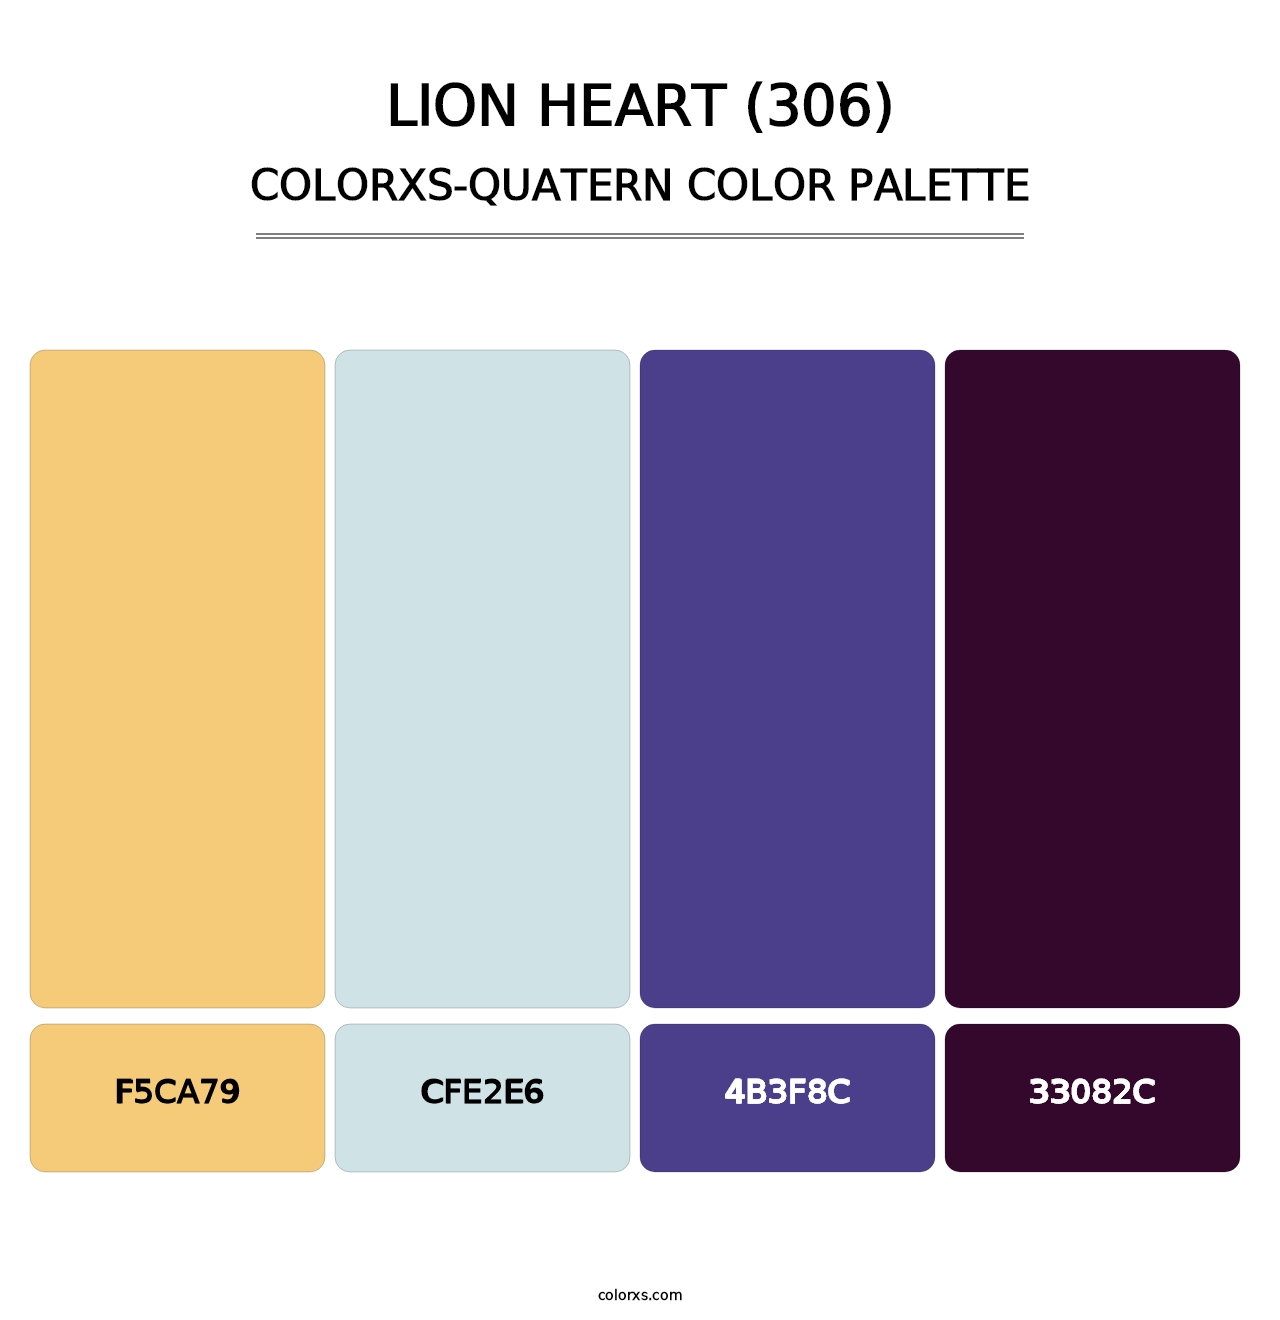 Lion Heart (306) - Colorxs Quatern Palette